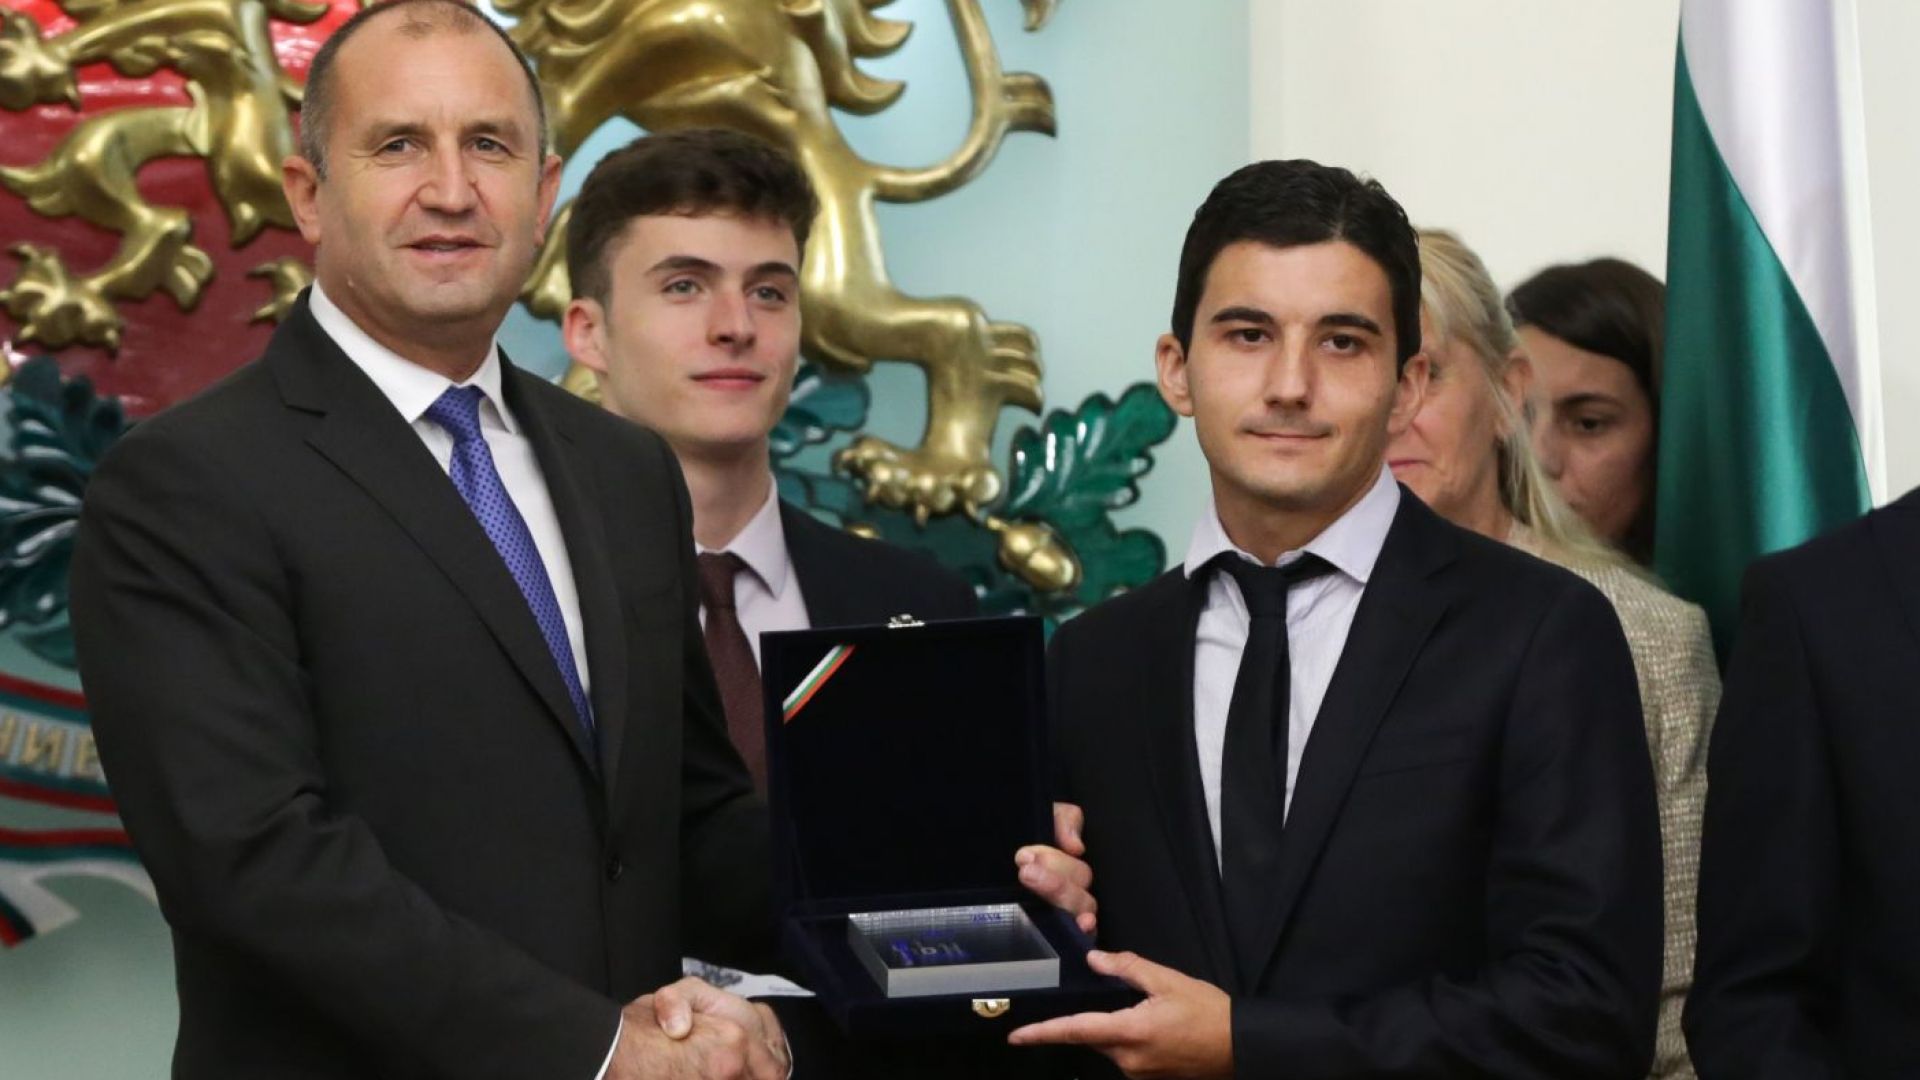 31-годишен българин, който работи за Google, получи наградата "Джон Атанасов"